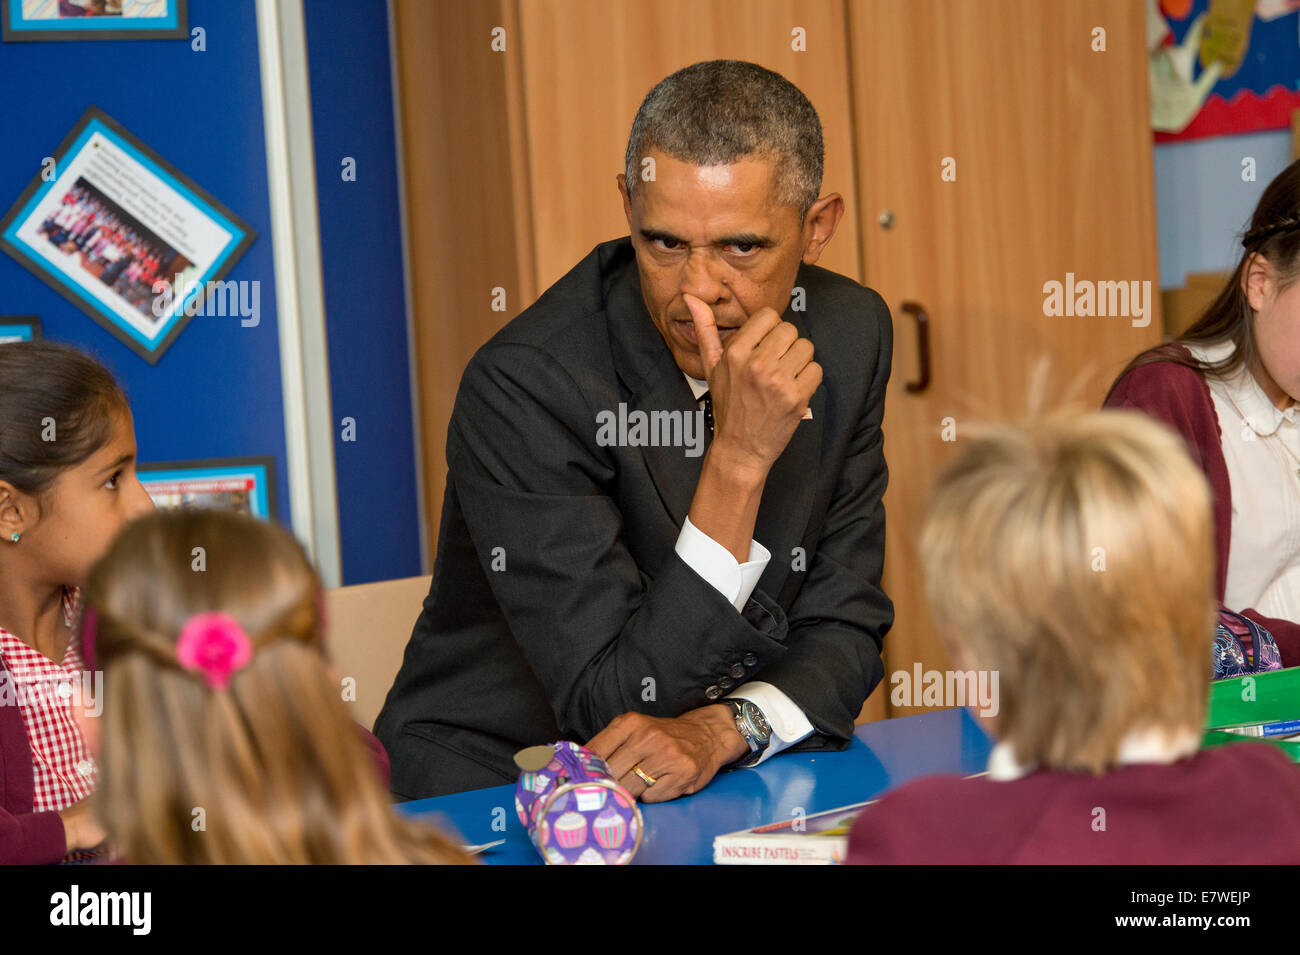 NATO-Gipfel in Wales mit Präsident Barack Obama ein Premierminister David Cameron Besuch einer Grundschule in Newport Stockfoto